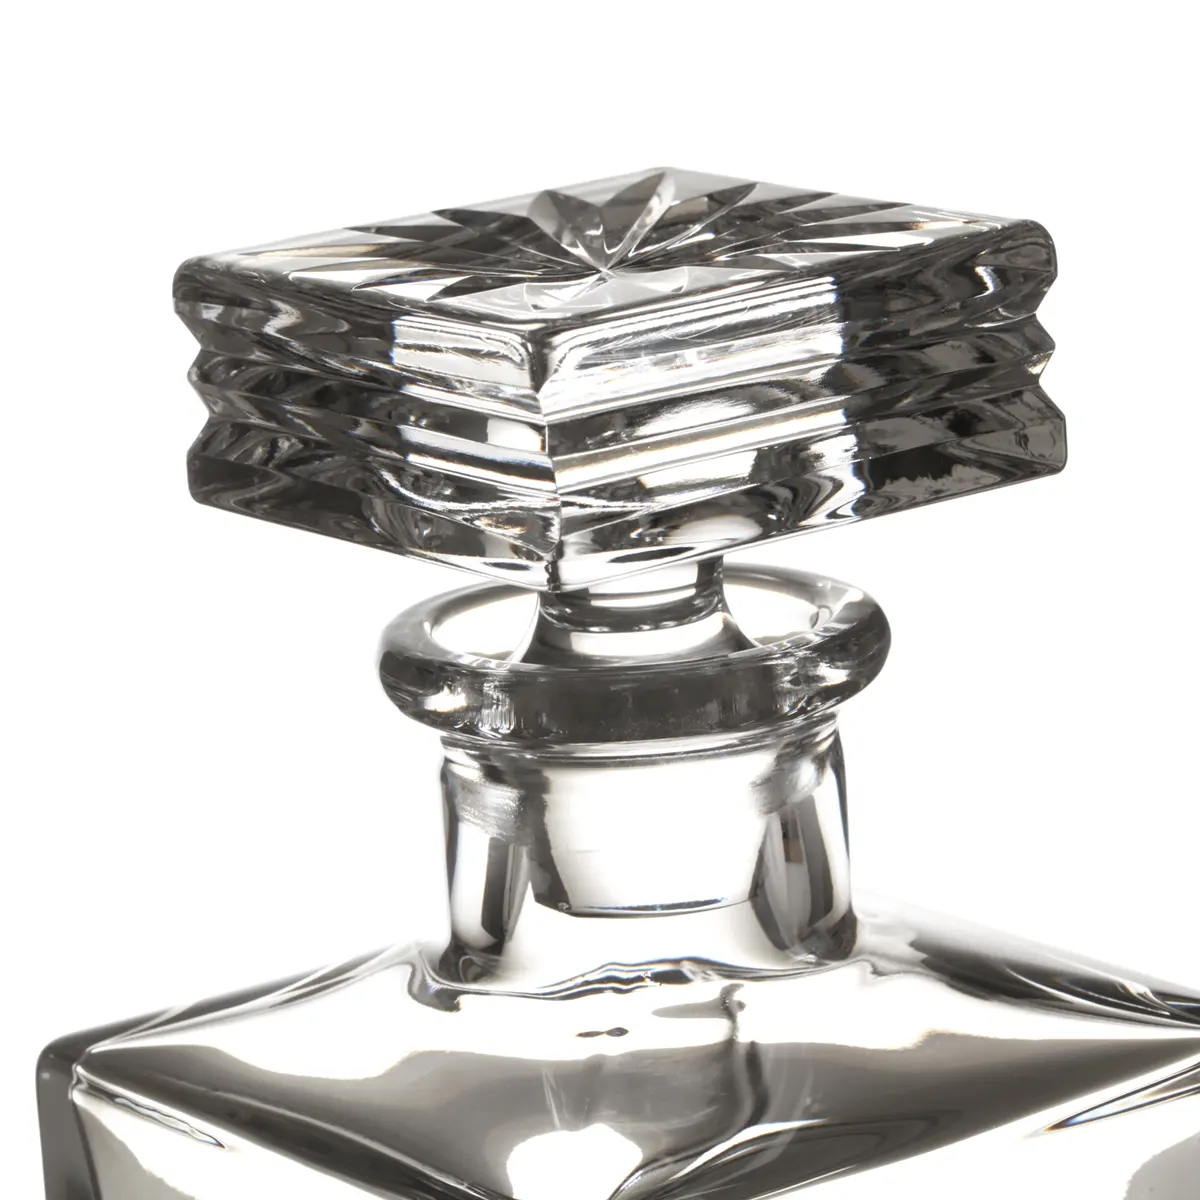 Art Deco - Handgefertigte Whisky Karaffe aus Kristallglas mit Diamantschliff